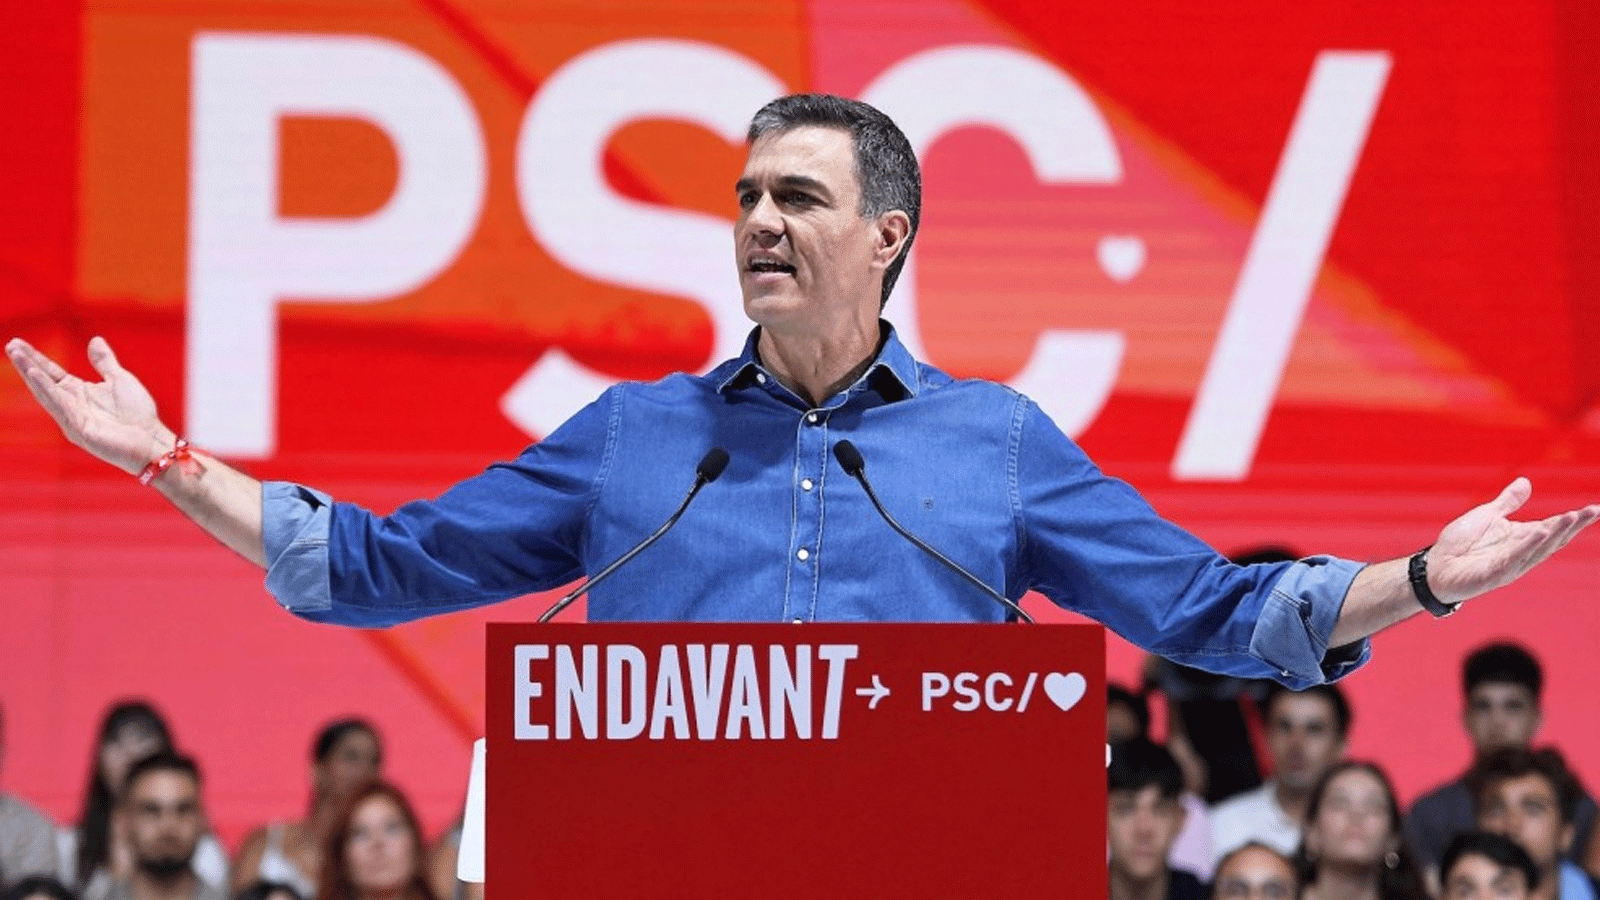  رئيس الوزراء الإسباني والمرشح الاشتراكي بيدرو سانشيز يلقي خطابًا خلال اجتماع انتخابي في برشلونة في 16 تموز\يوليو ، قبل الانتخابات العامة الإسبانية، المقرر إجراؤها في 23 تموز\يوليو 2023